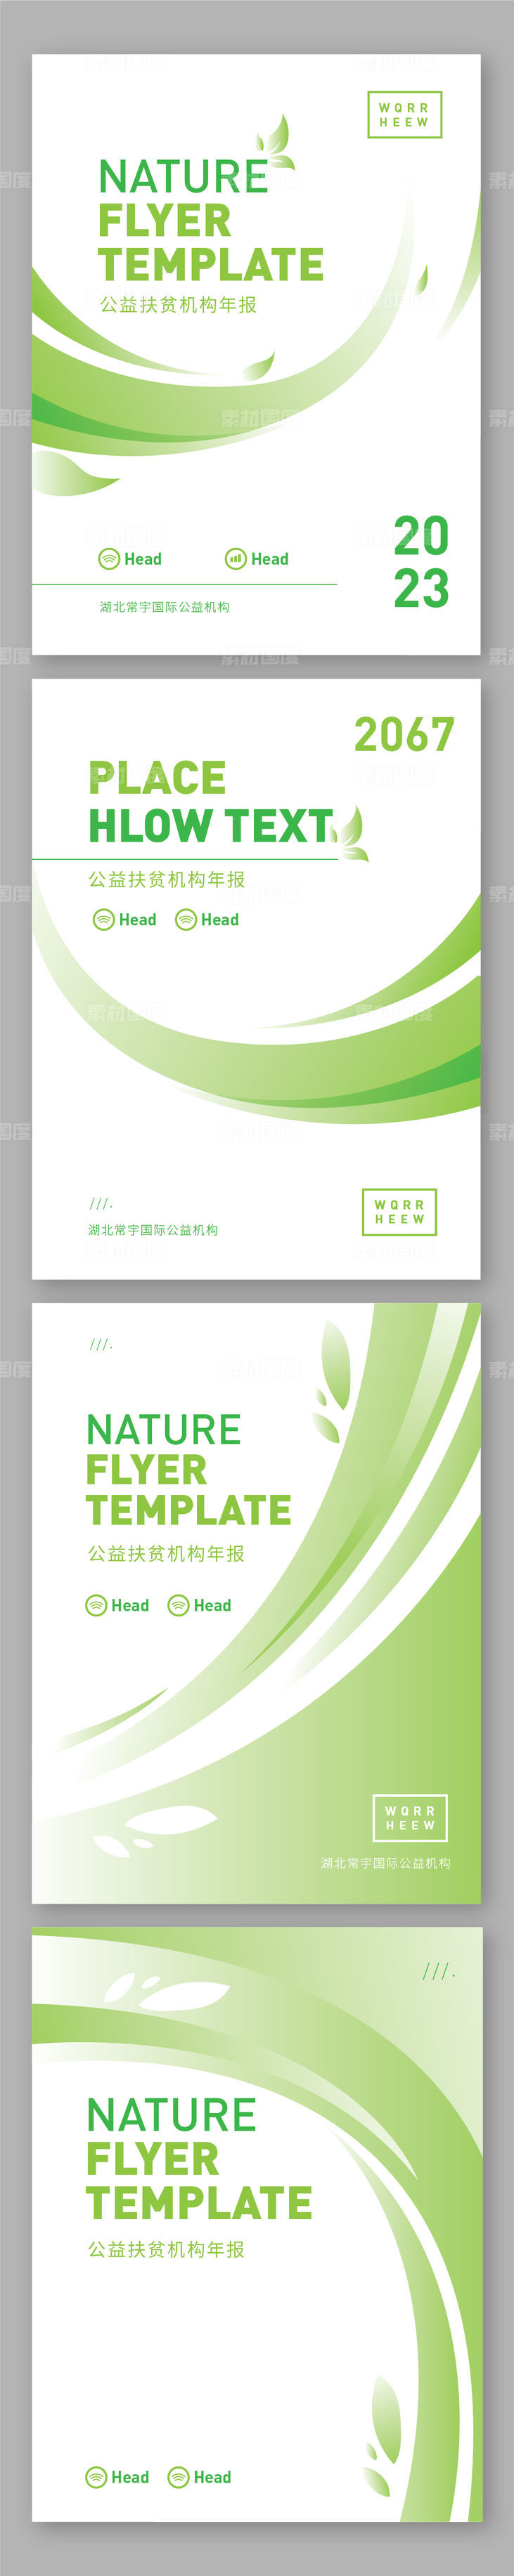 公益手册封面设计画册机构品牌绿色环保生态自然绿化书籍系列商务